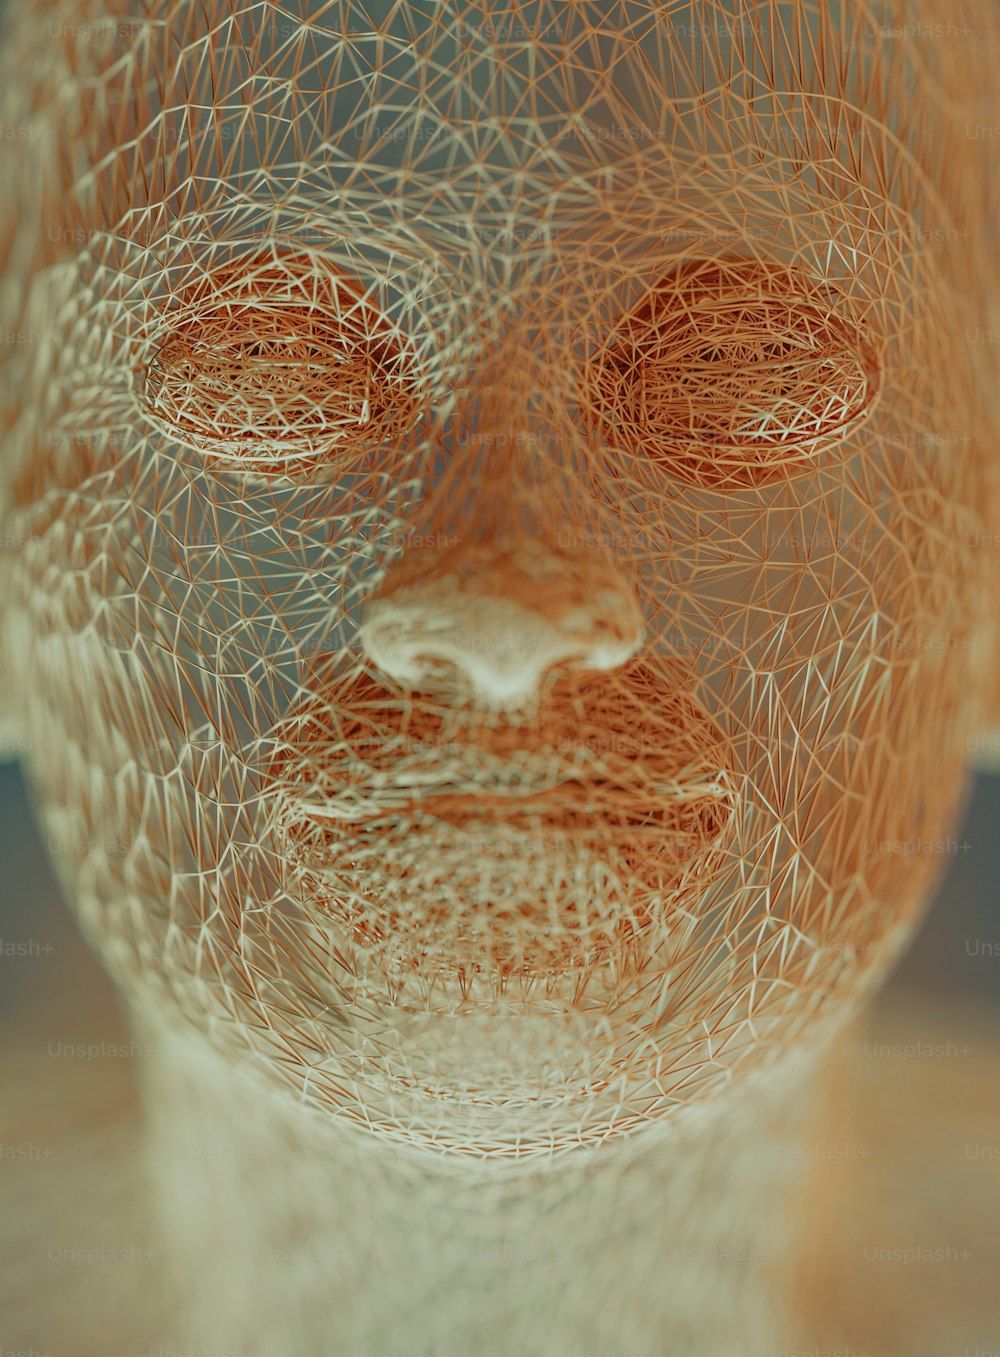 uma escultura de arame do rosto de um homem com os olhos fechados